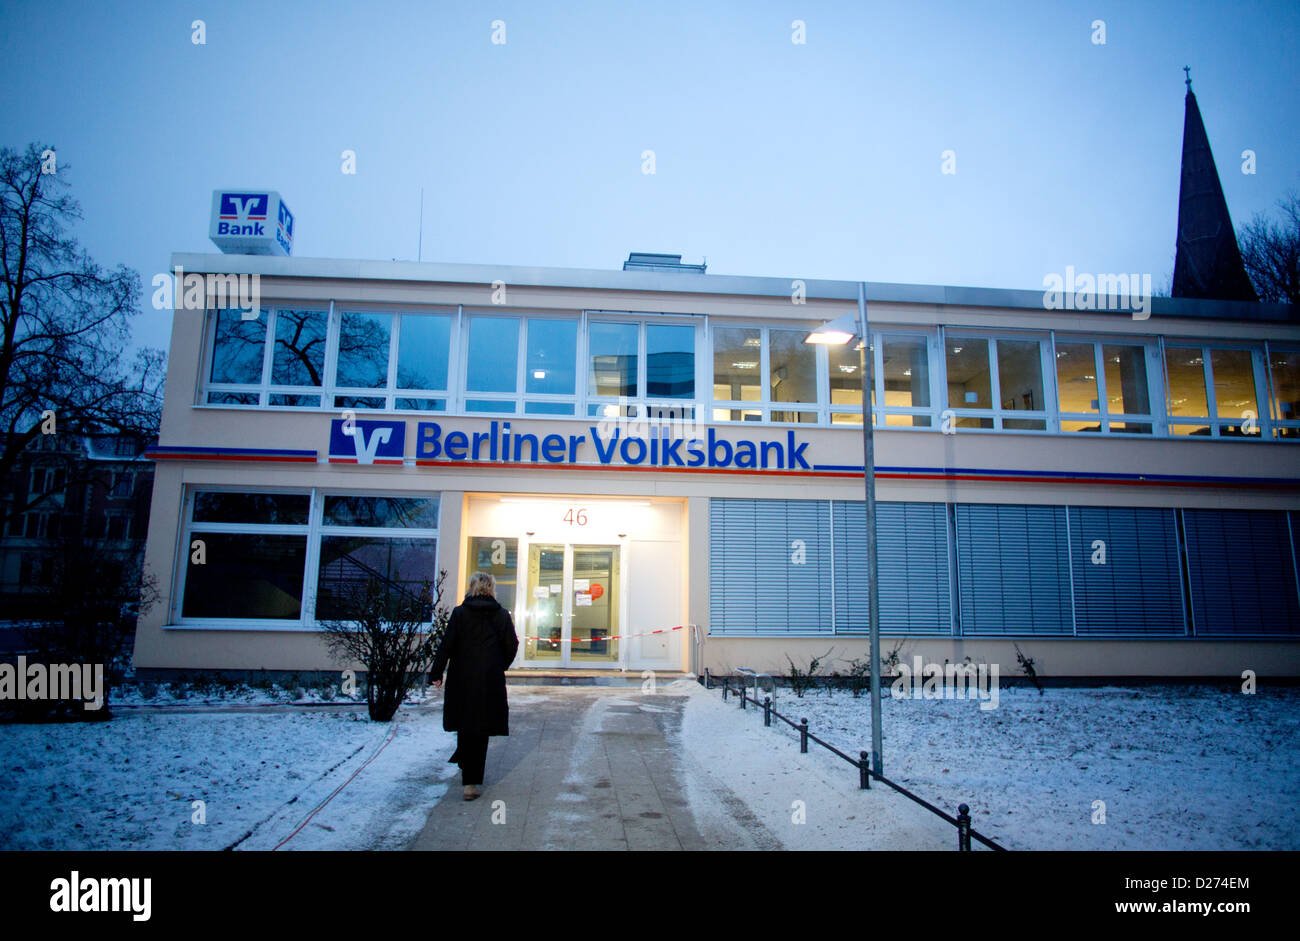 Blick auf einer Bank-Filiale in Berlin (Steglitz), Deutschland, 15. Januar 2013. Bisher unbekannte Diebe haben gegraben einen Tunnel in den Banktresor. Sie konnte entkommen unerkannt mit ihrer Ware. Foto: Kay Nietfeld Stockfoto